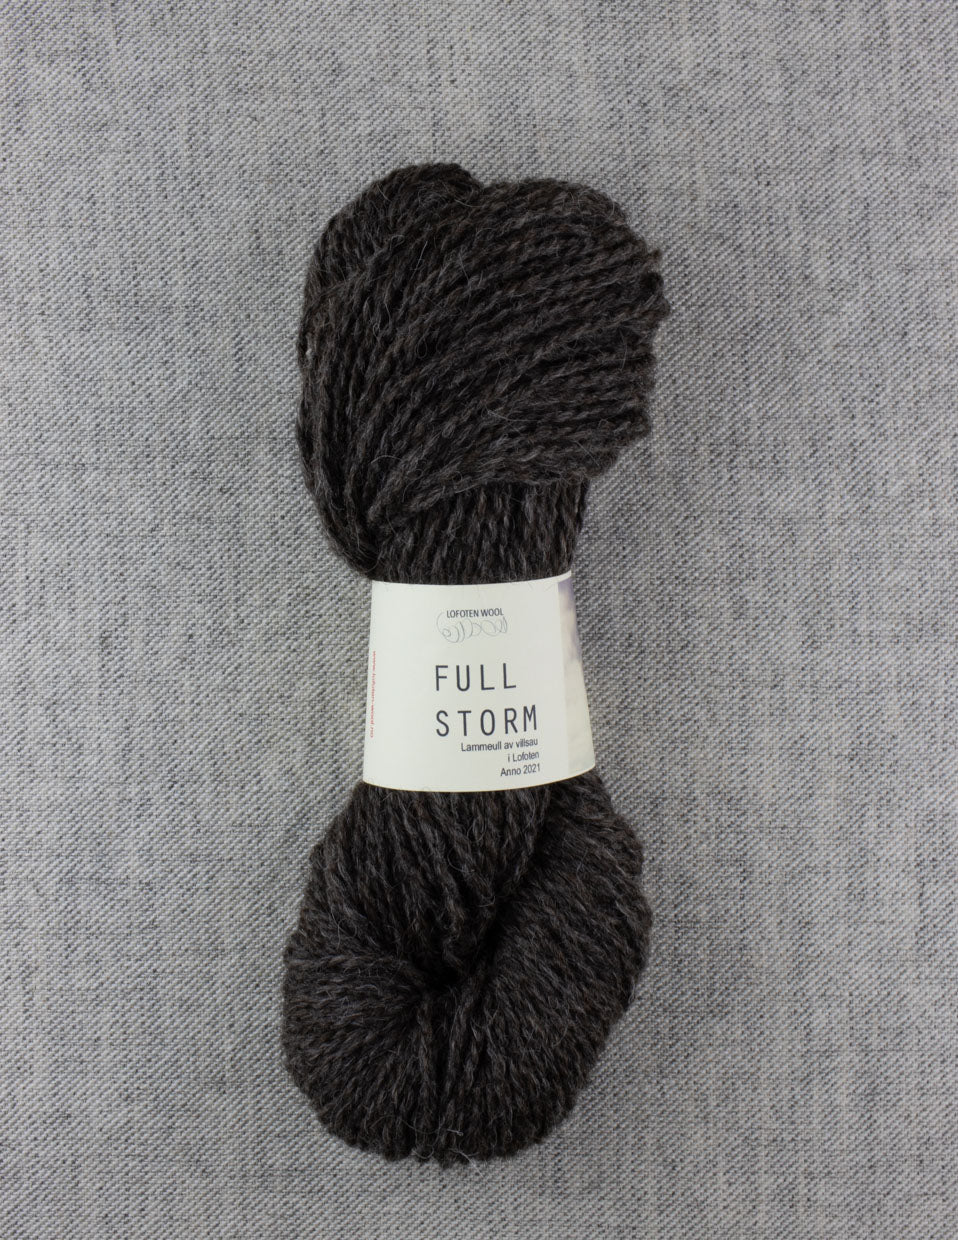 Full storm, 2 ply 100g chunky yarn